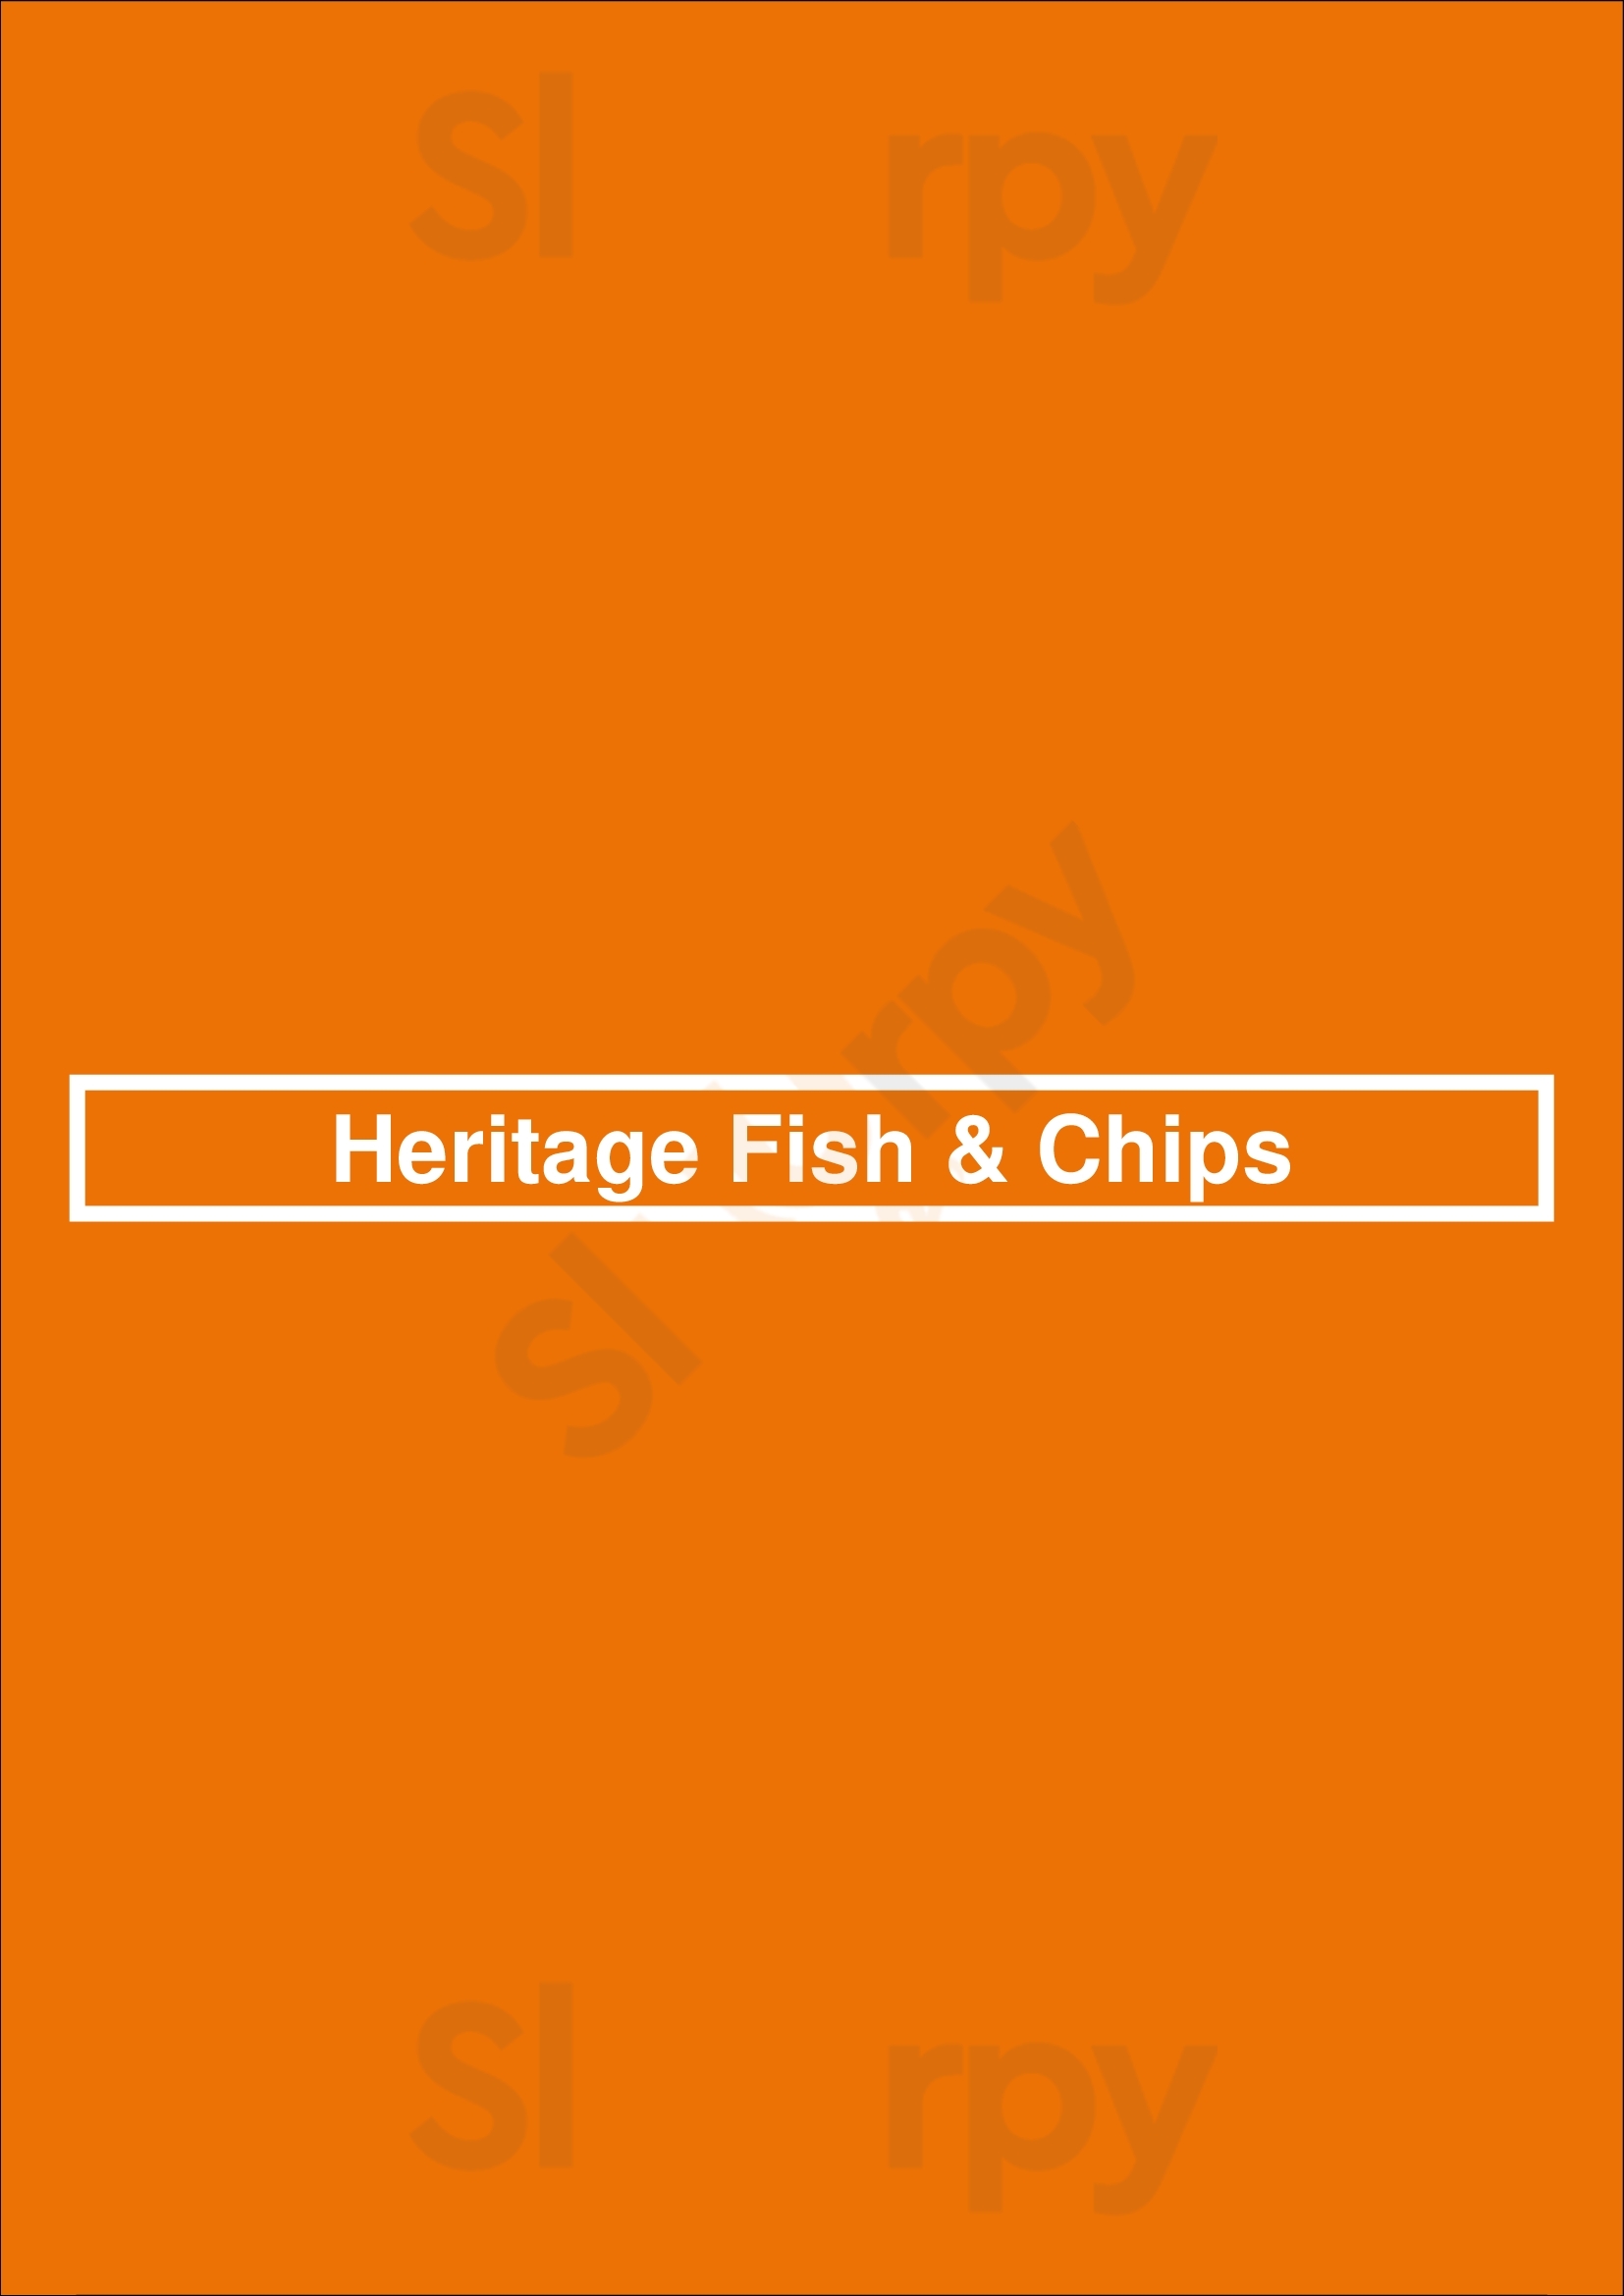 Heritage Fish & Chips Brampton Menu - 1